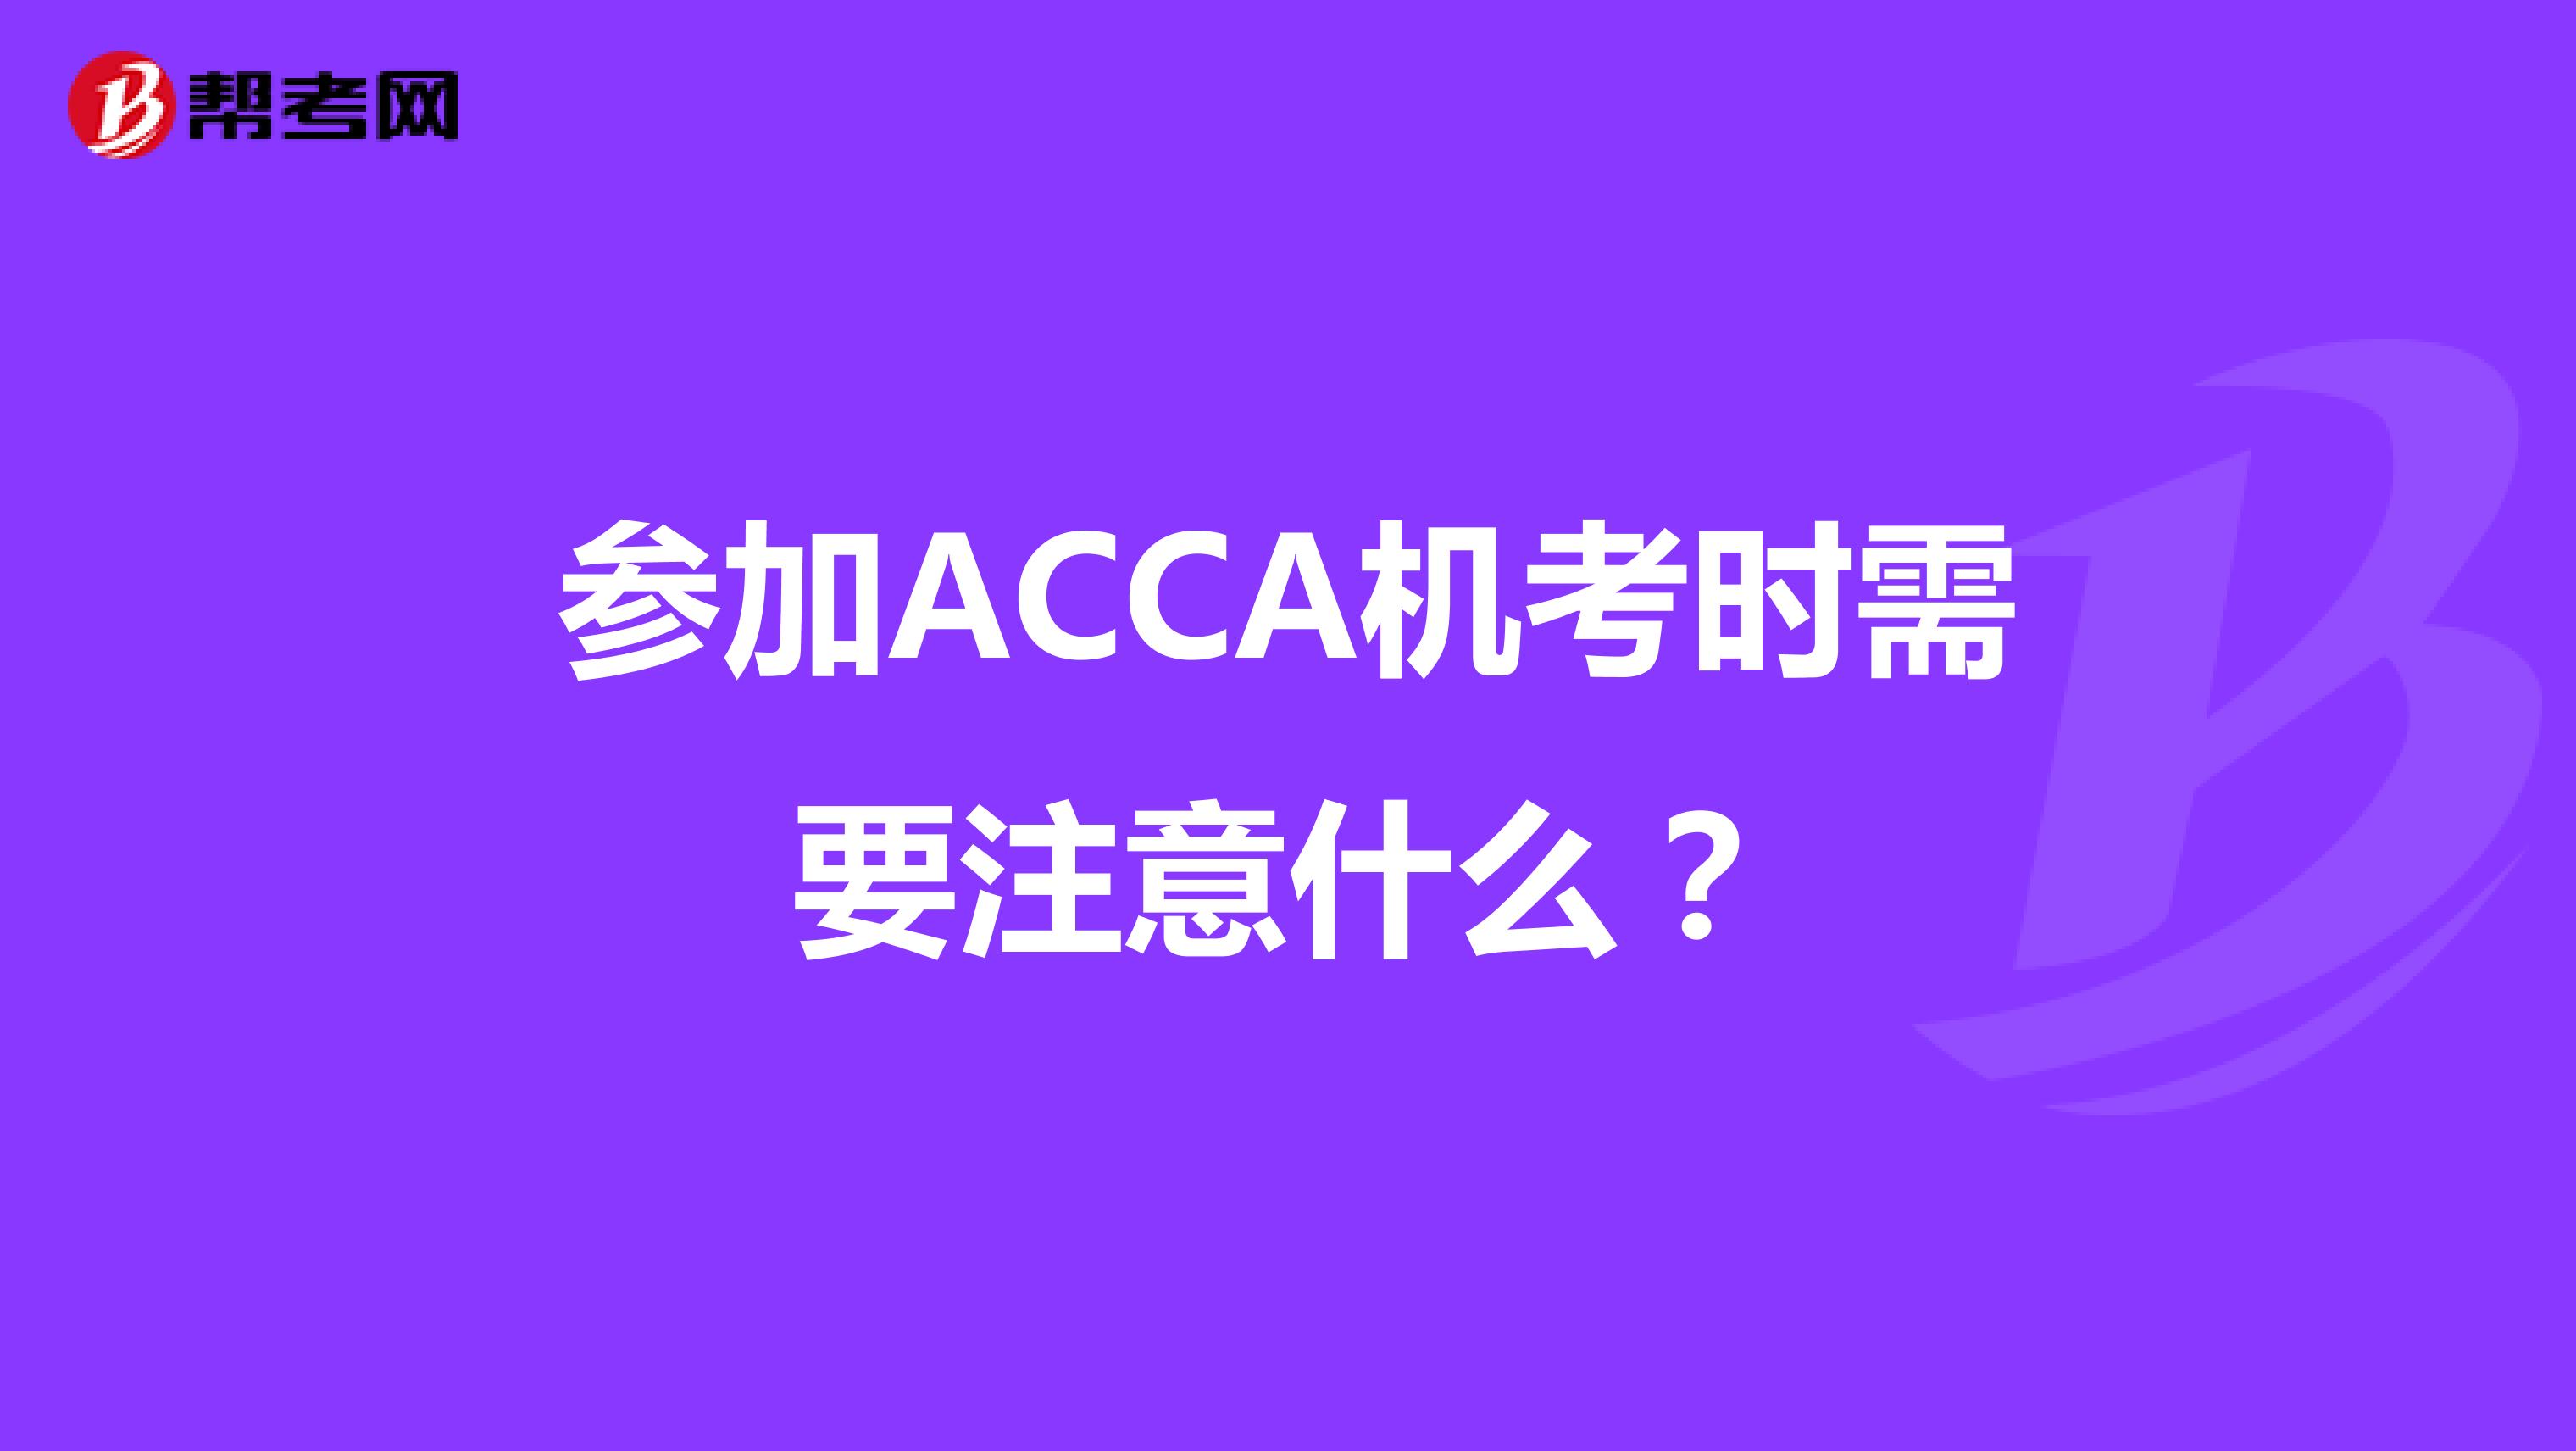 参加ACCA机考时需要注意什么？